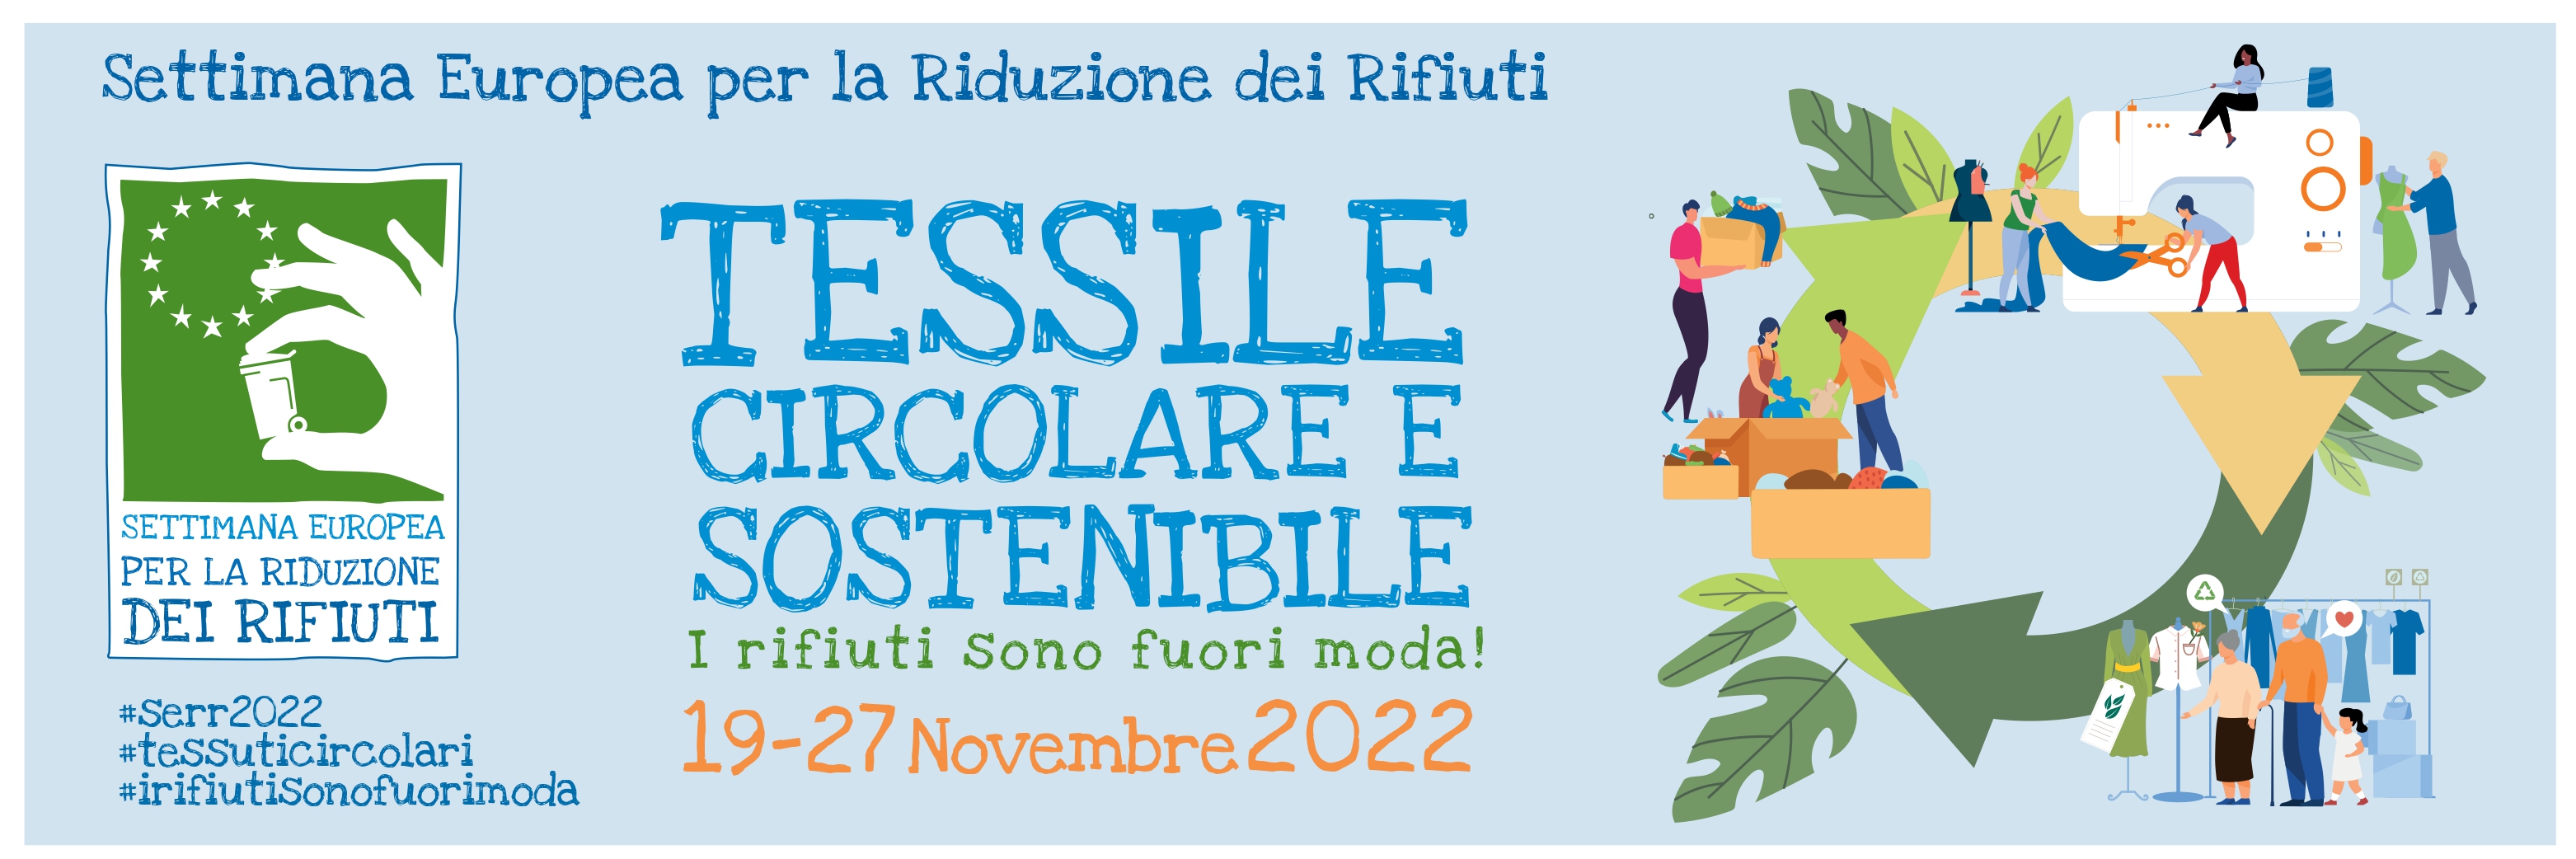 Locandina sul SERR con informazioni sul evento: "tessile circolare e sostenibile" -"19-27 Novembre 2022" - "#serr2022 #tessuticircolari #irifuitisonofuorimoda"